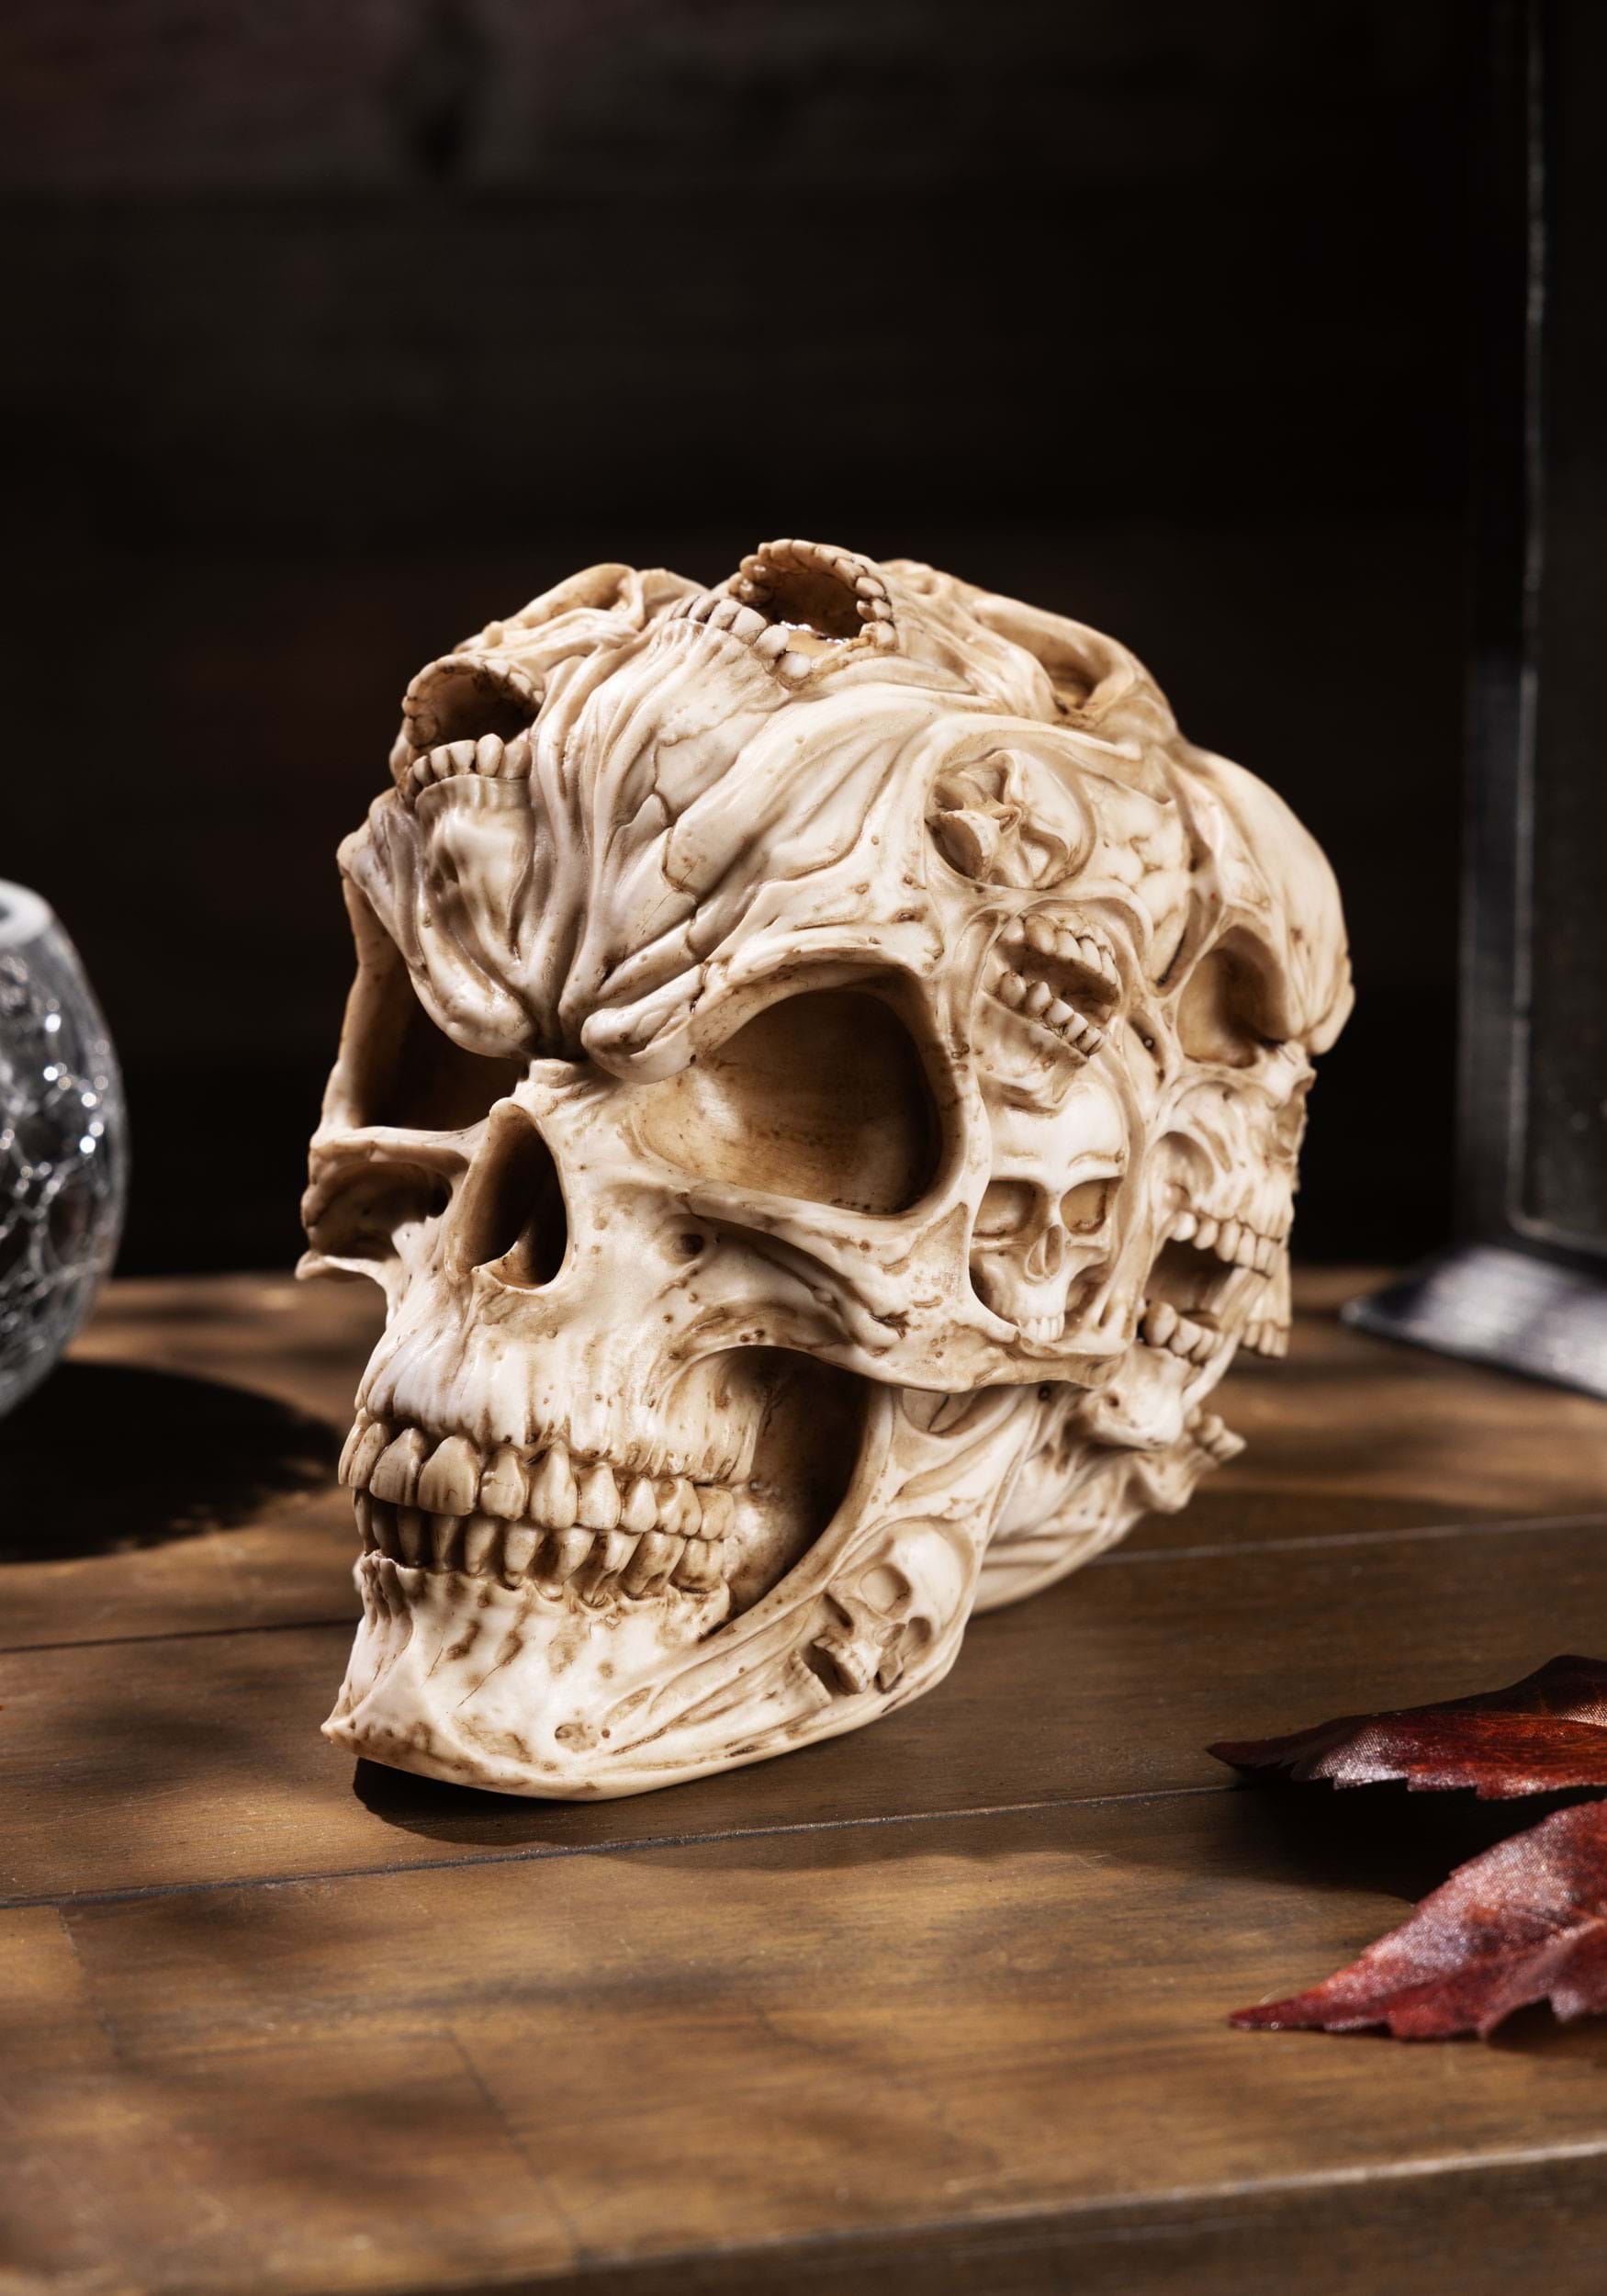 7 Skull Of Skulls Halloween Prop